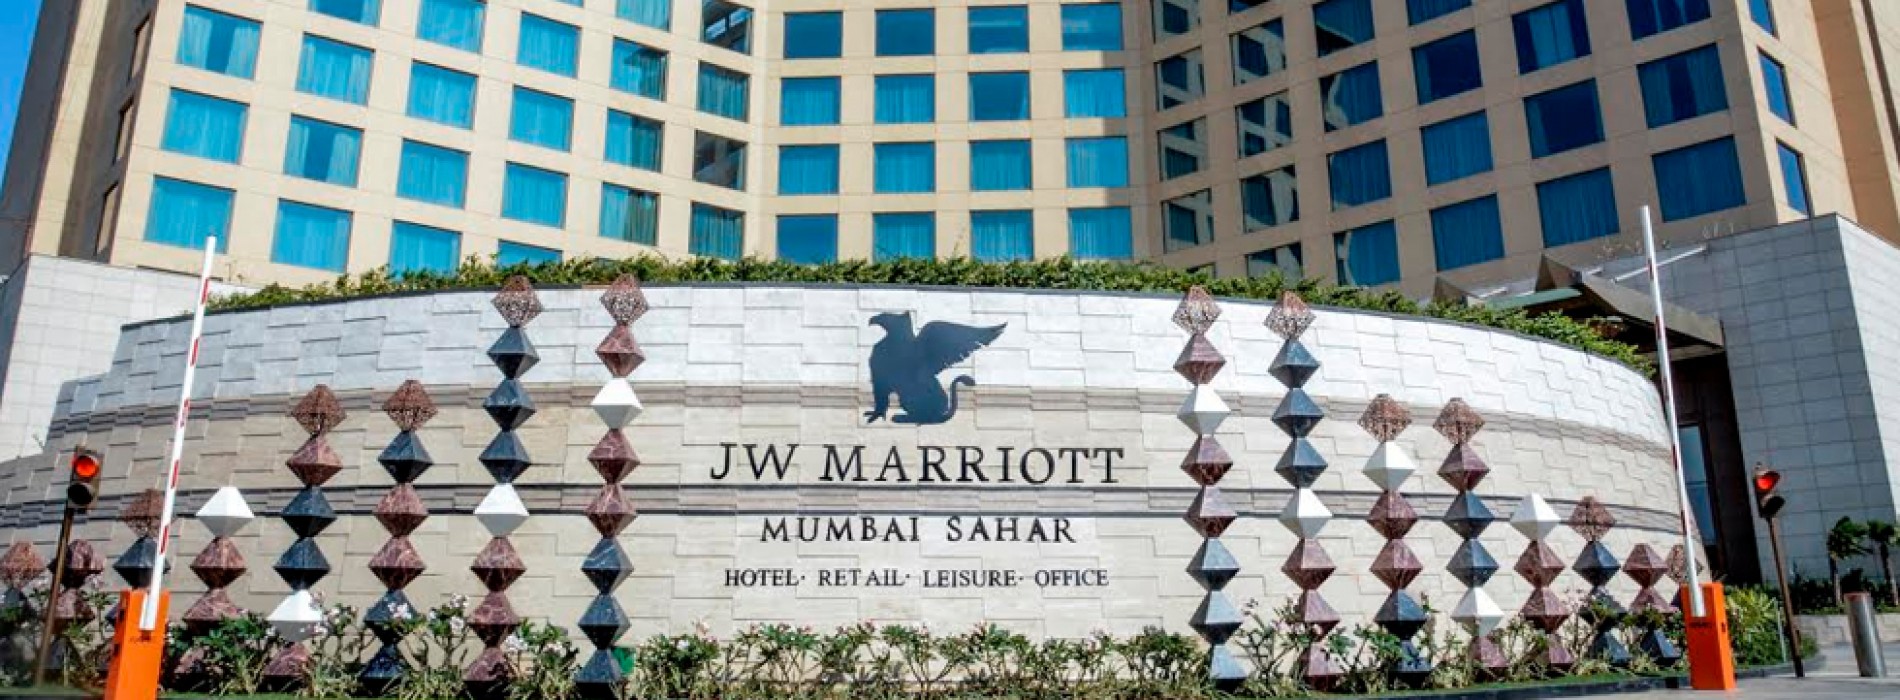 JW Marriott Mumbai Sahar bags several esteemed awards